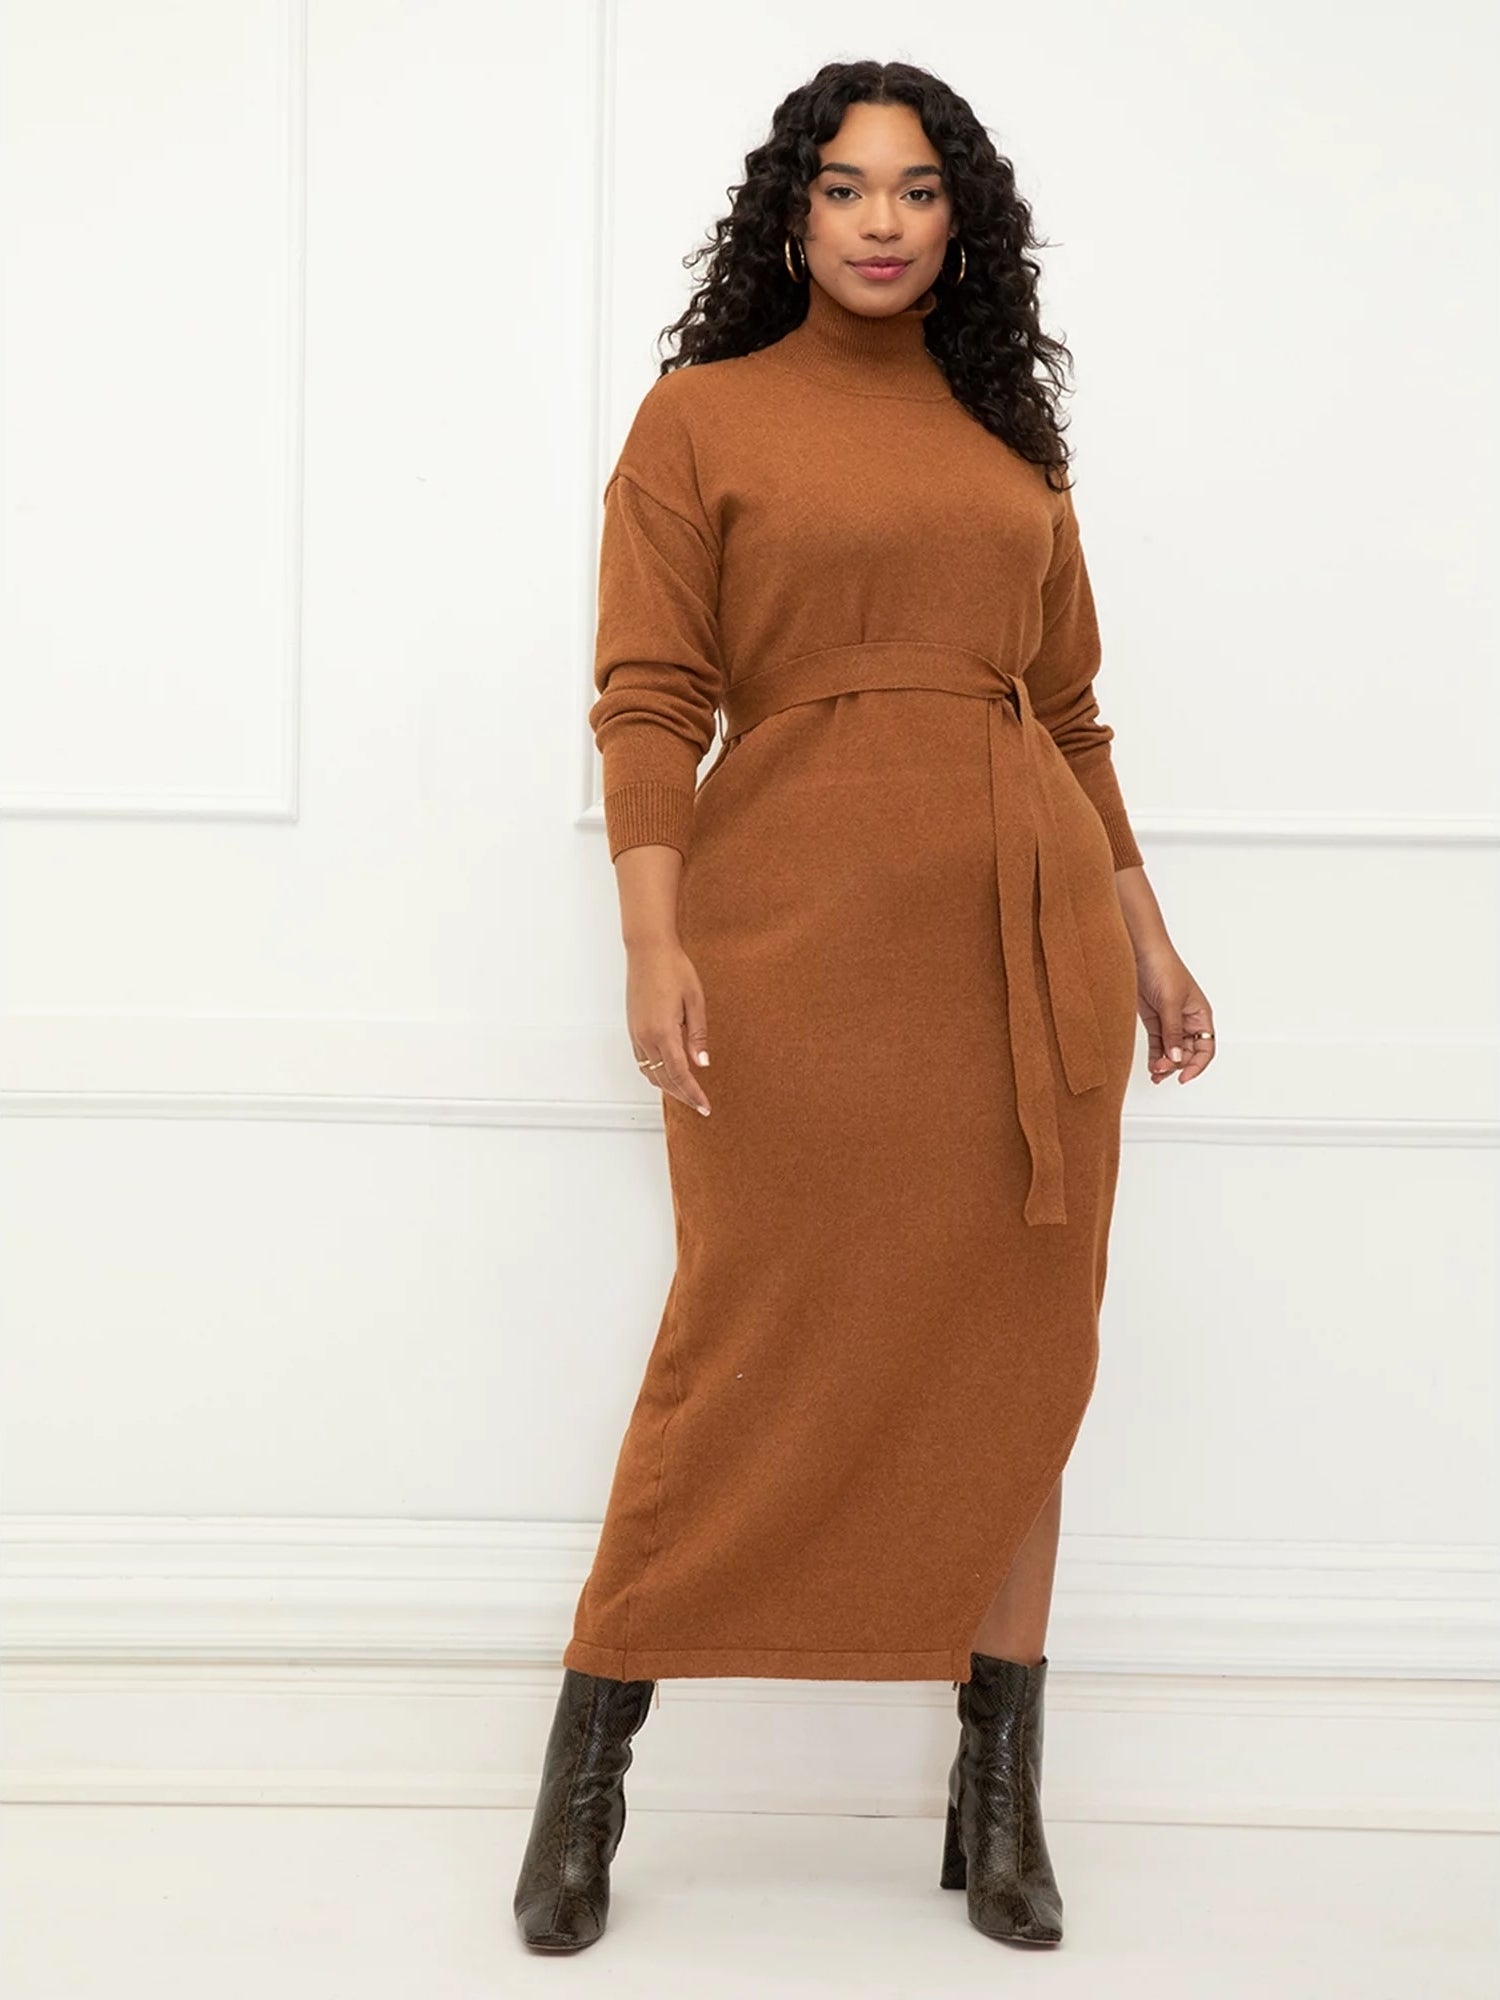 model wearing an orange/brown long sweater dress